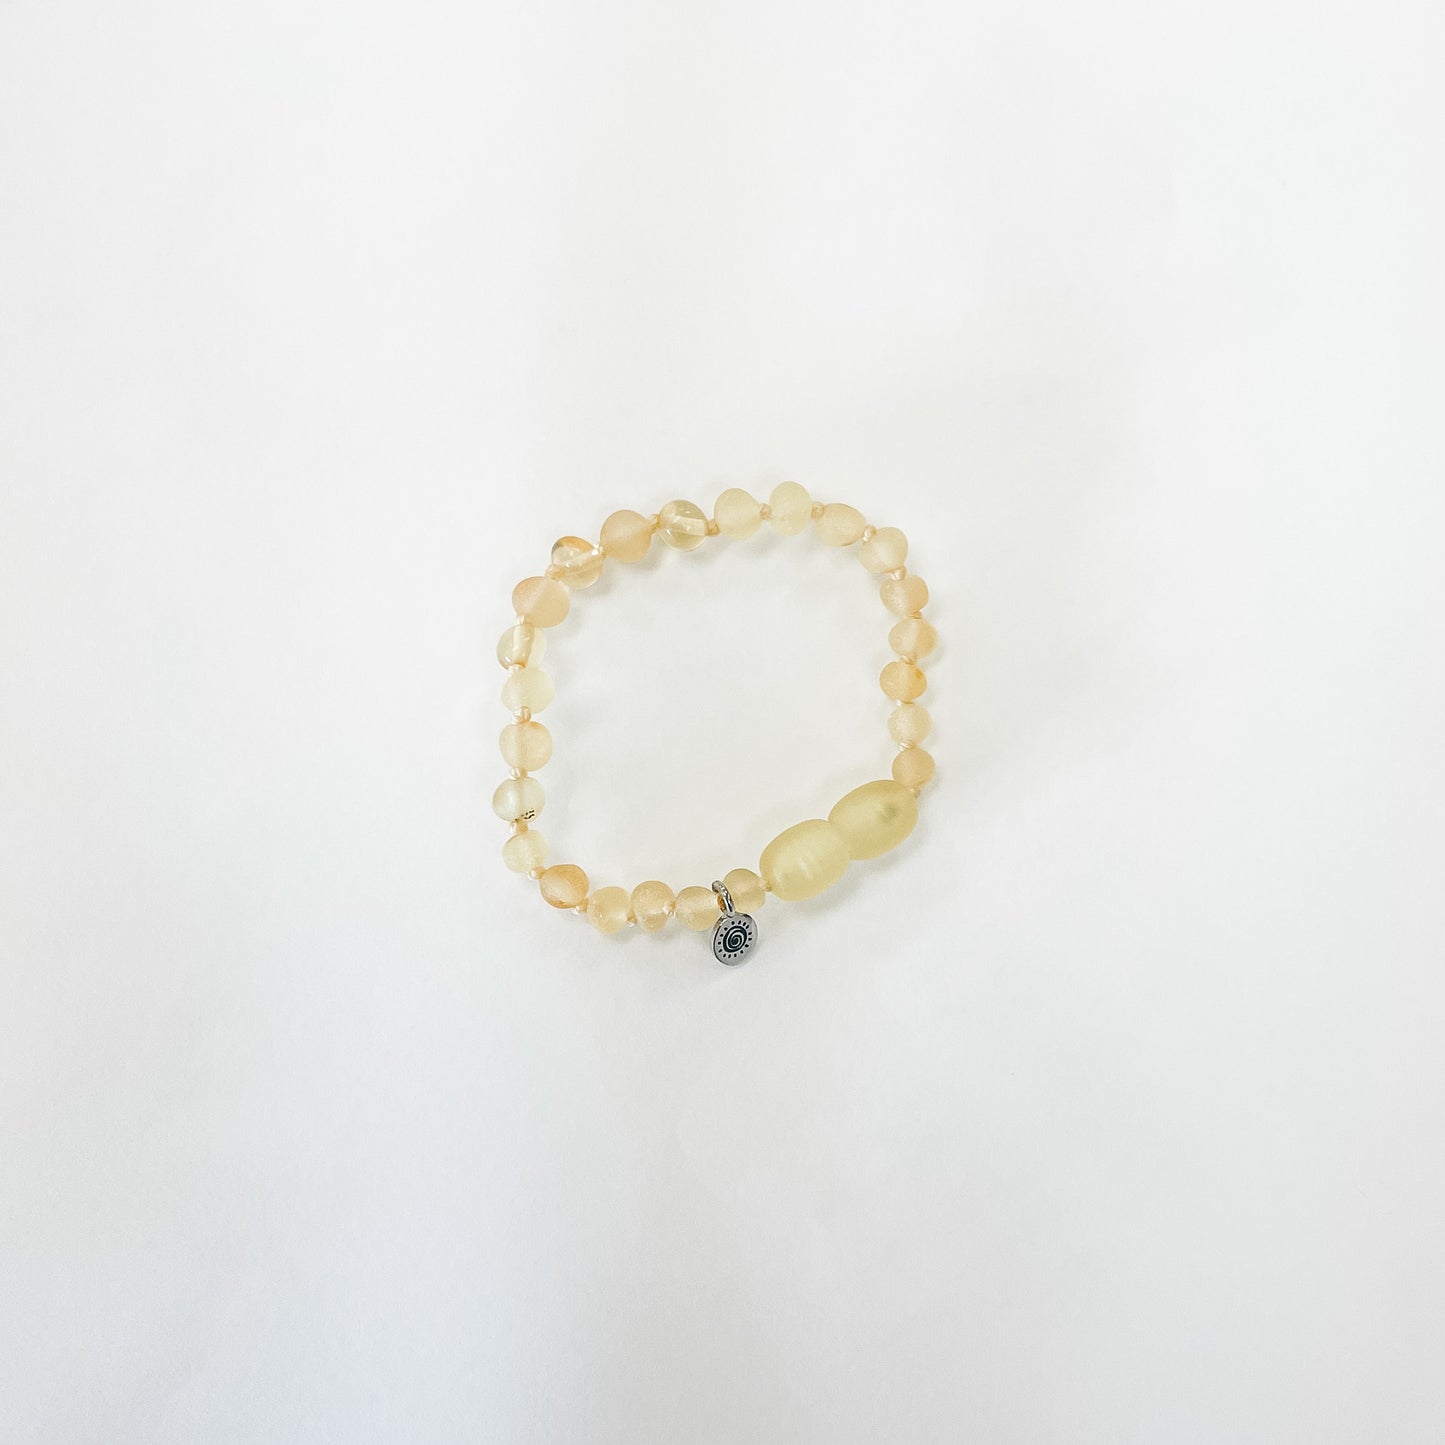 Seeds of the Sun - Amber Anklet/Bracelet (Lemon 14cm)